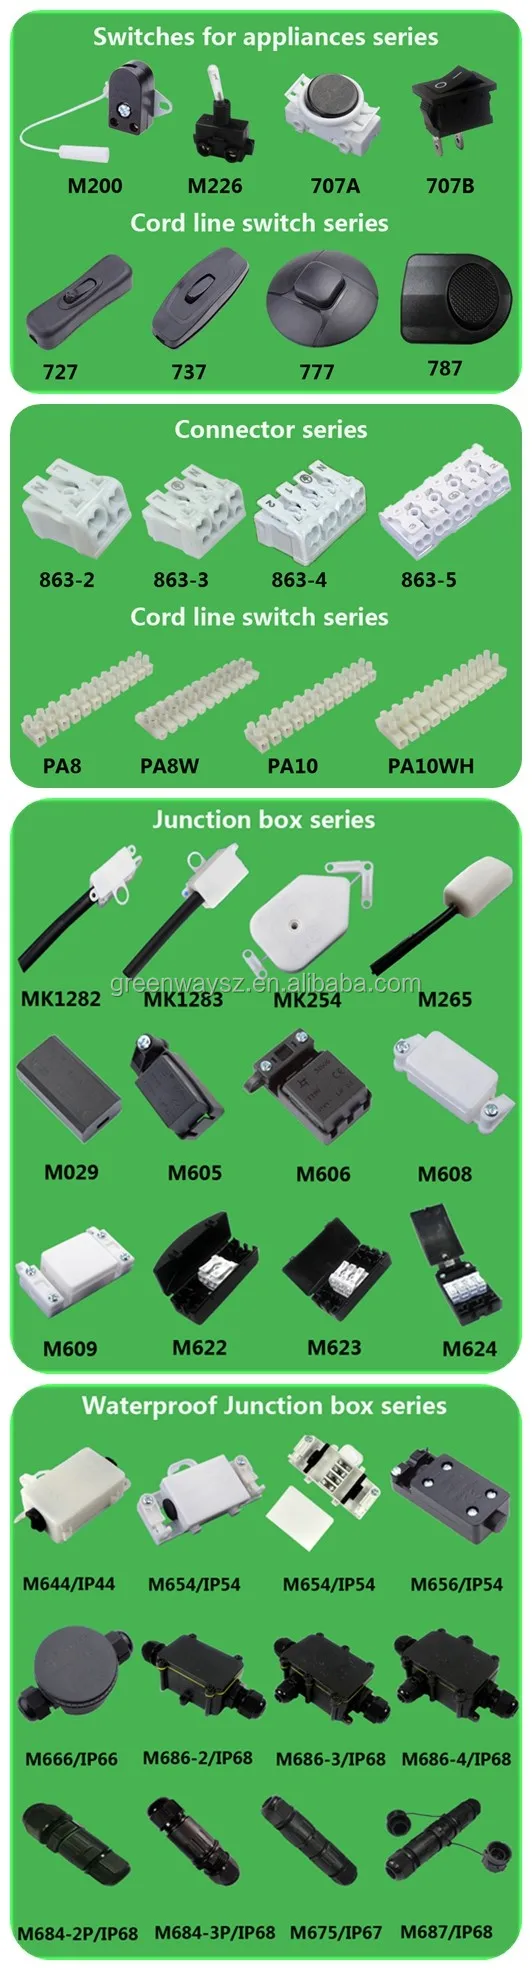 3 vías de Exteriores Impermeable IP66 Cable Conector Caja De Conexiones 450V 16A IP66 Tu